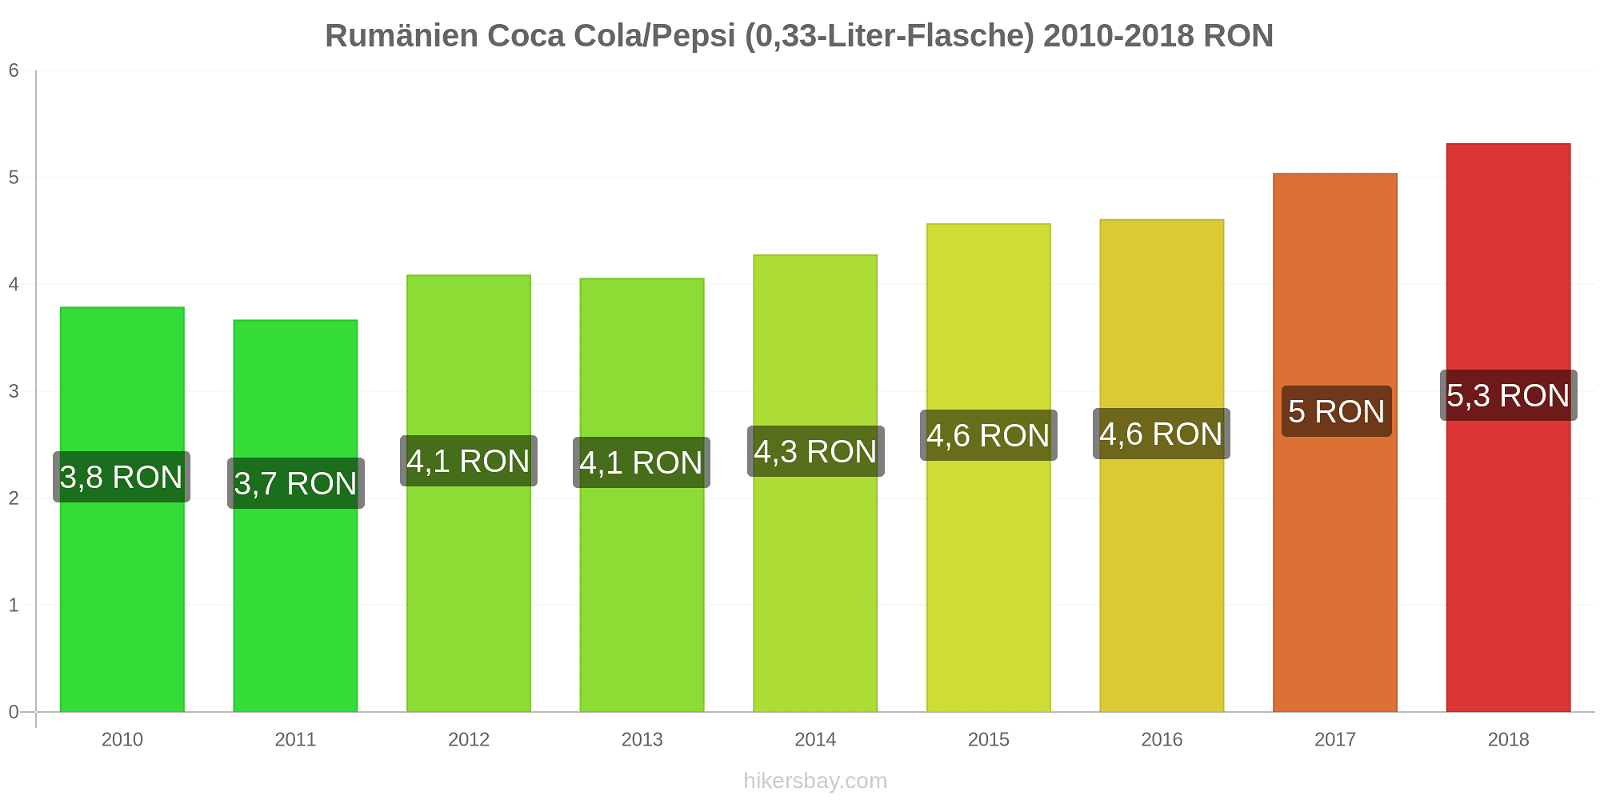 Rumänien Preisänderungen Coke/Pepsi (0,33-Liter-Flasche) hikersbay.com